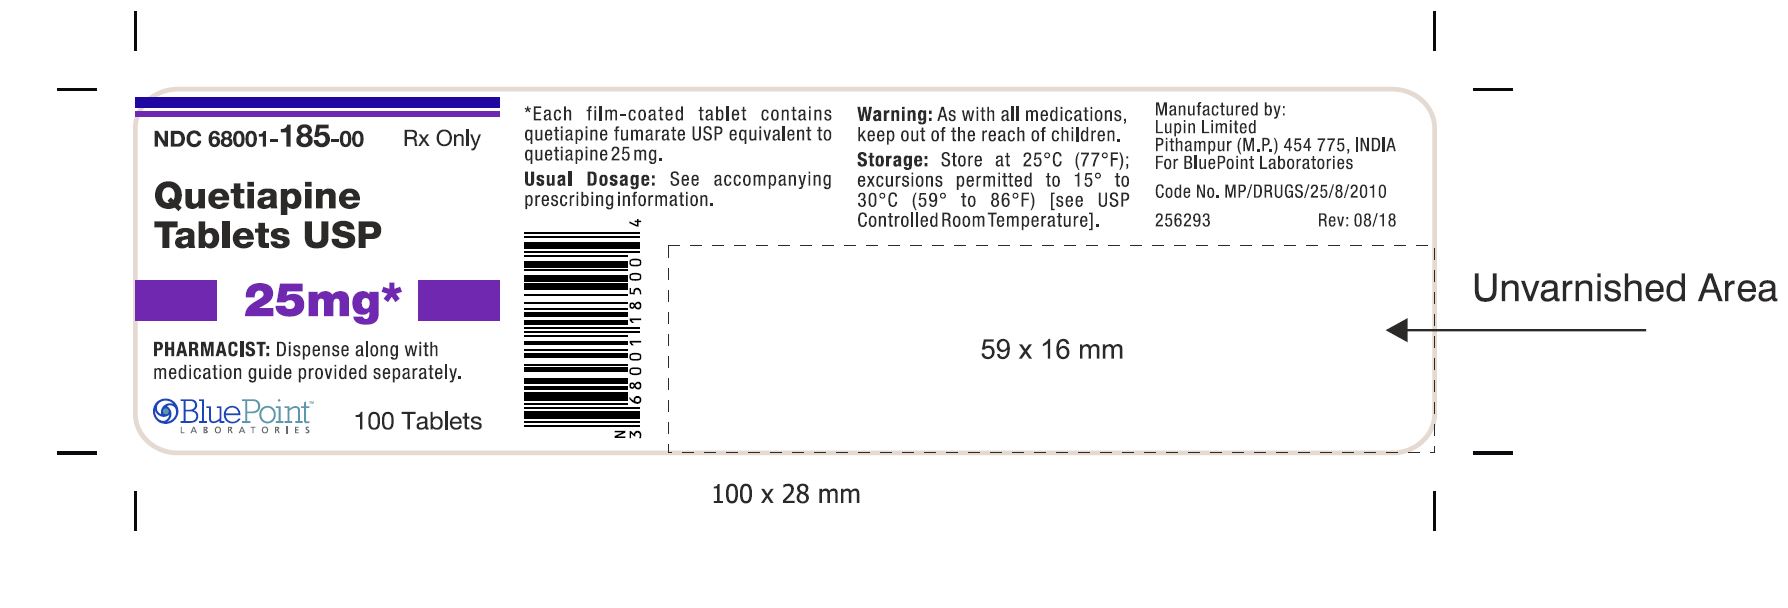 Quetiapine USP Tablets 25mg 100 Tablets (Pithampur) Rev 08-18.JPG